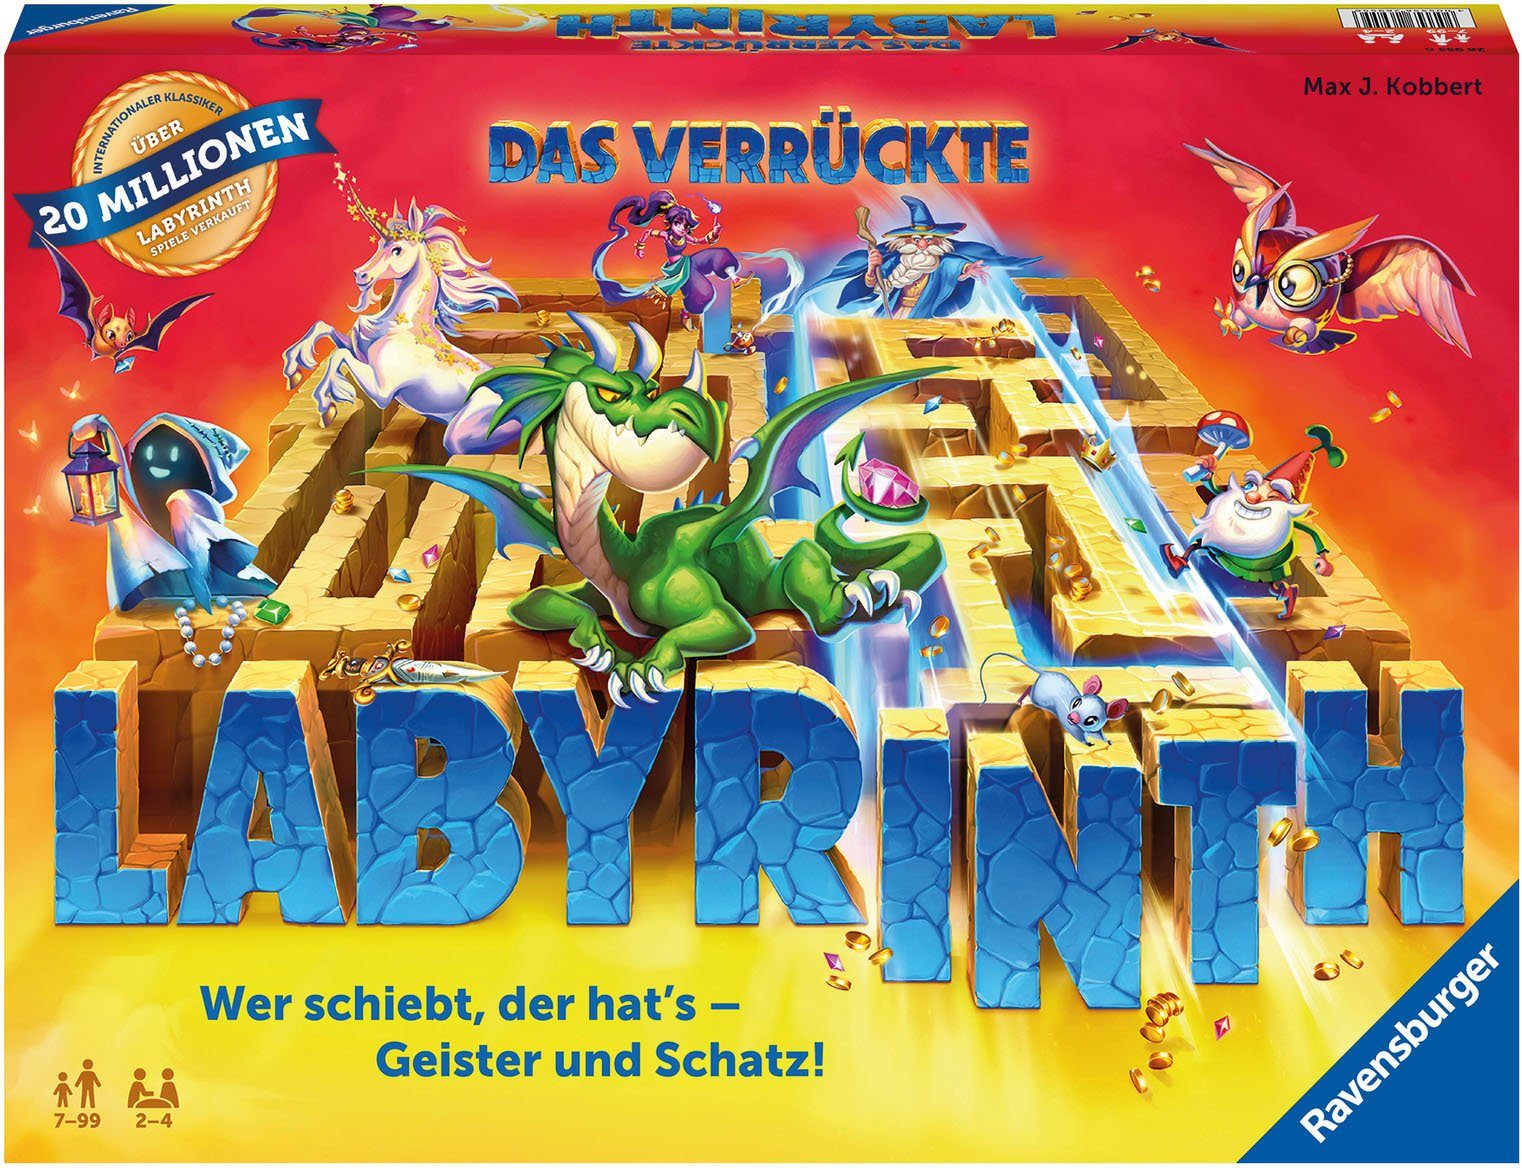 in Made Das FSC® weltweit; verrückte Ravensburger Spiel, Europe Wald - Labyrinth, - Familienspiel schützt